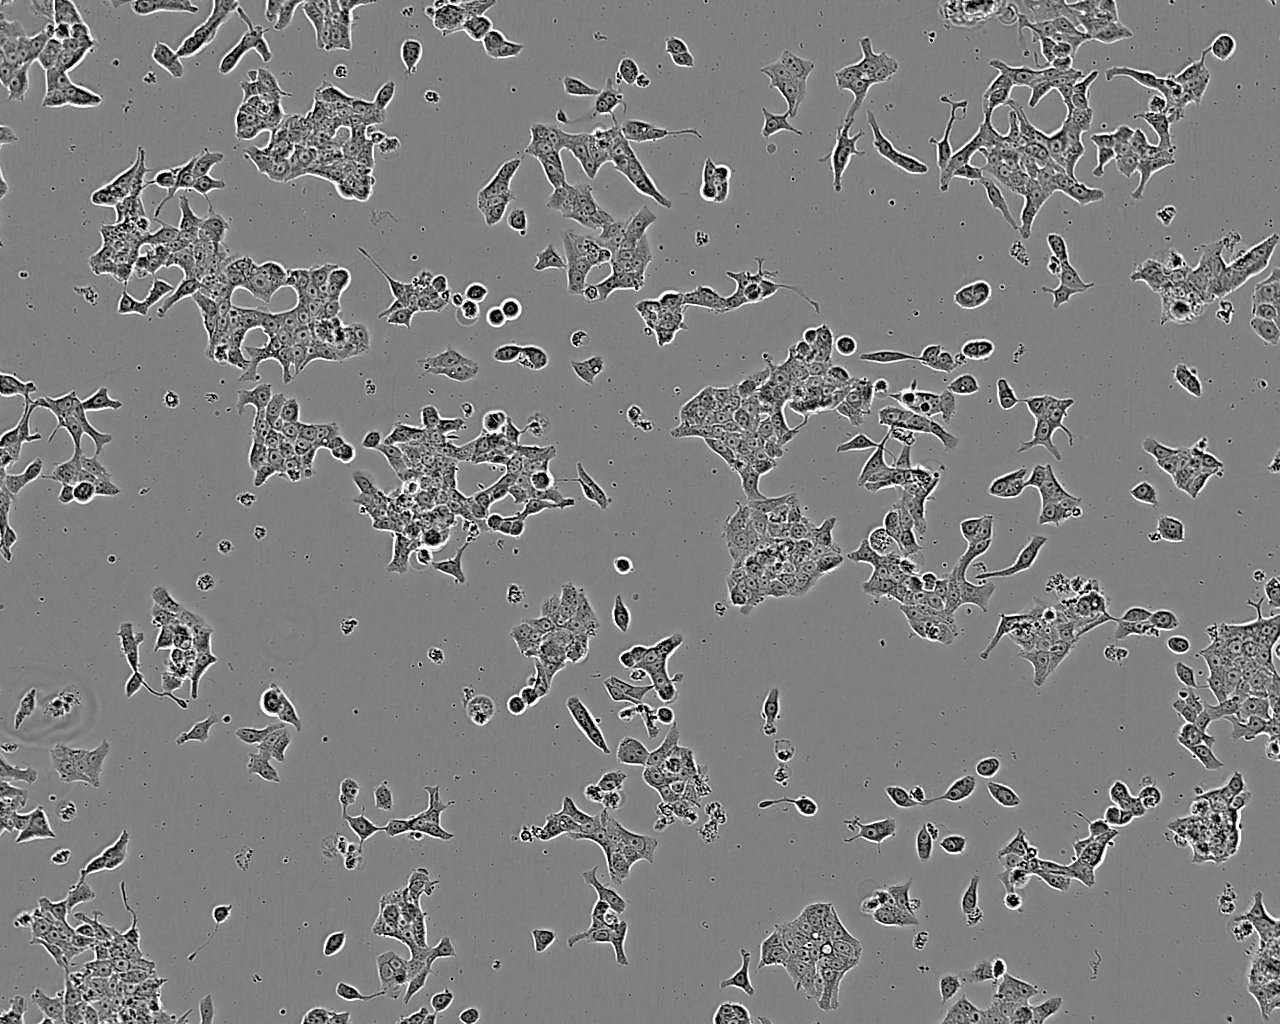 SK-N-SH Cells(赠送Str鉴定报告)|人神经母细胞瘤细胞